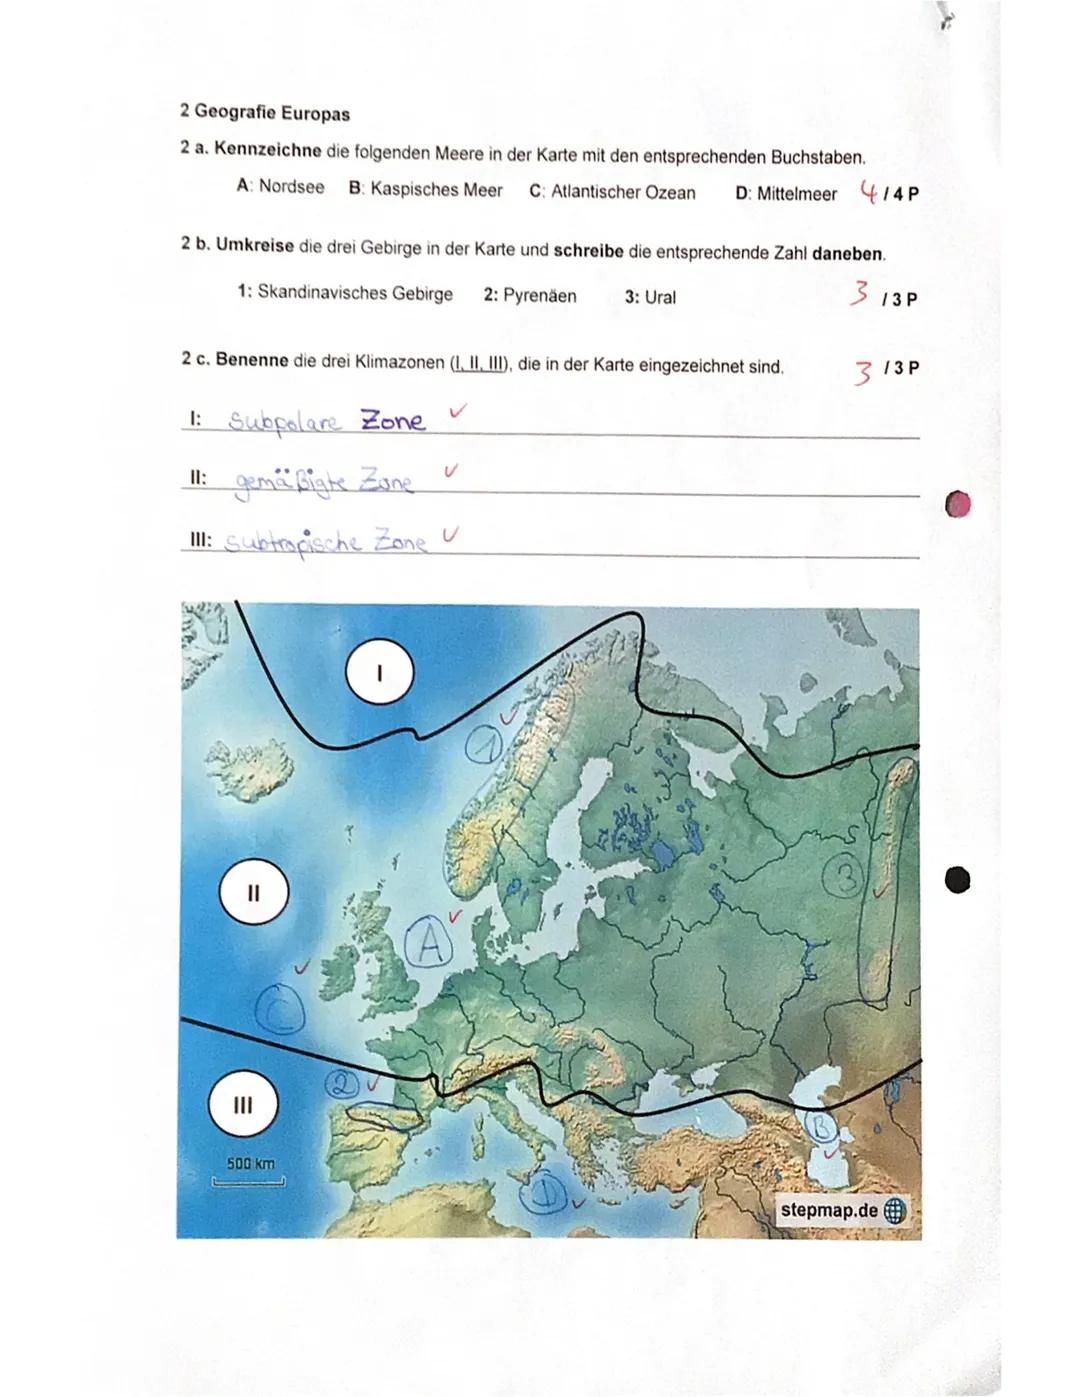 1. Lernkontrolle GL, Kl. 6g
Name: Alessia
EUROPA - ein Kontinent, viele Gesichter
1 Teilregionen Europas
1 a. Ordne den Teilregionen Europas